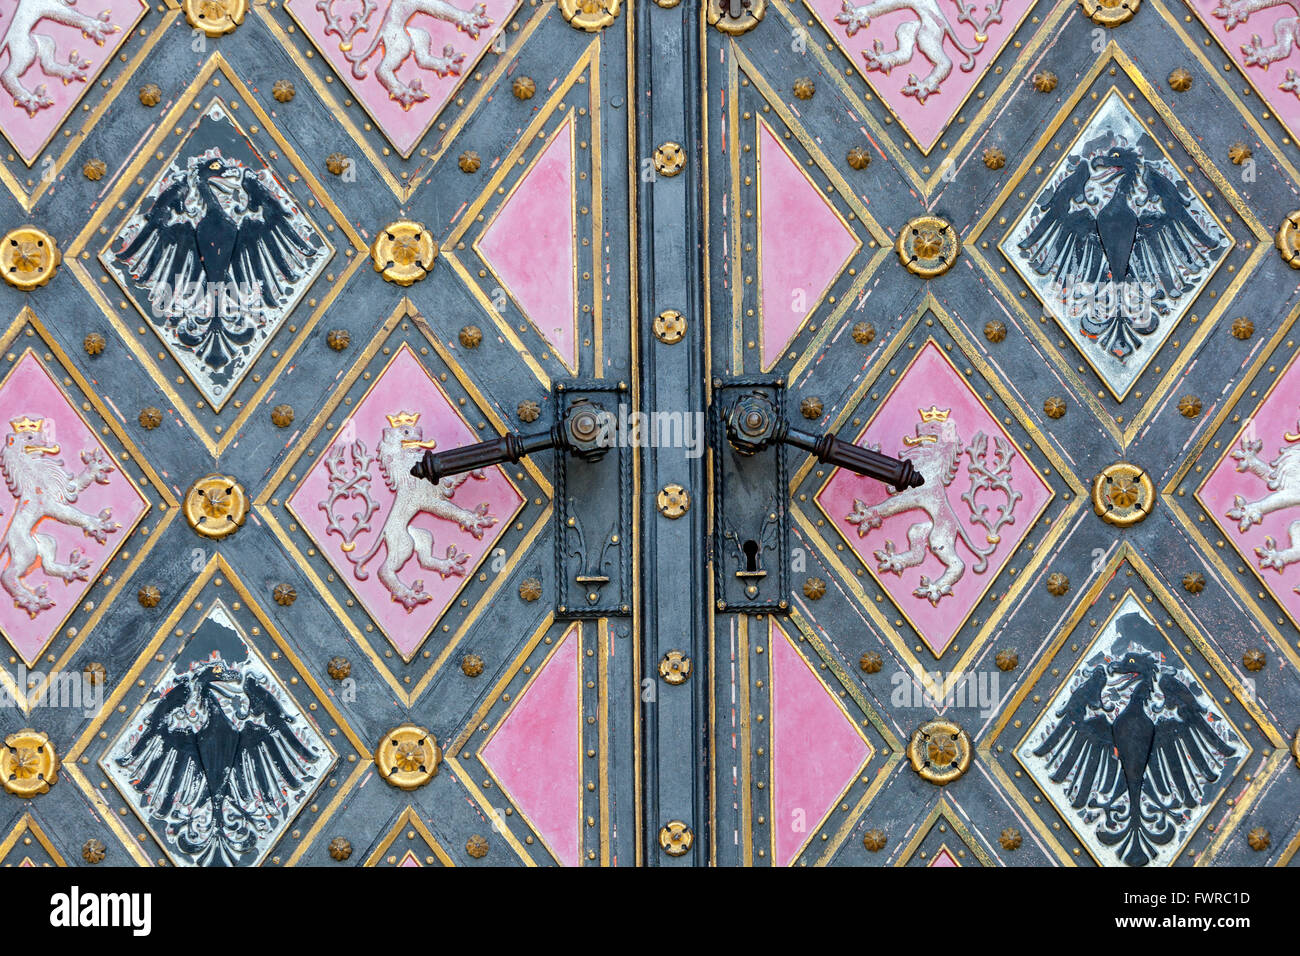 Die Türen von St. Peter und Paul Basilika, ein Symbol der Tschechischen Staatlichkeit - eine zweiseitige Tschechischen Löwen und Adler von Premyslid, Vysehrad in Prag in der Tschechischen Republik Stockfoto